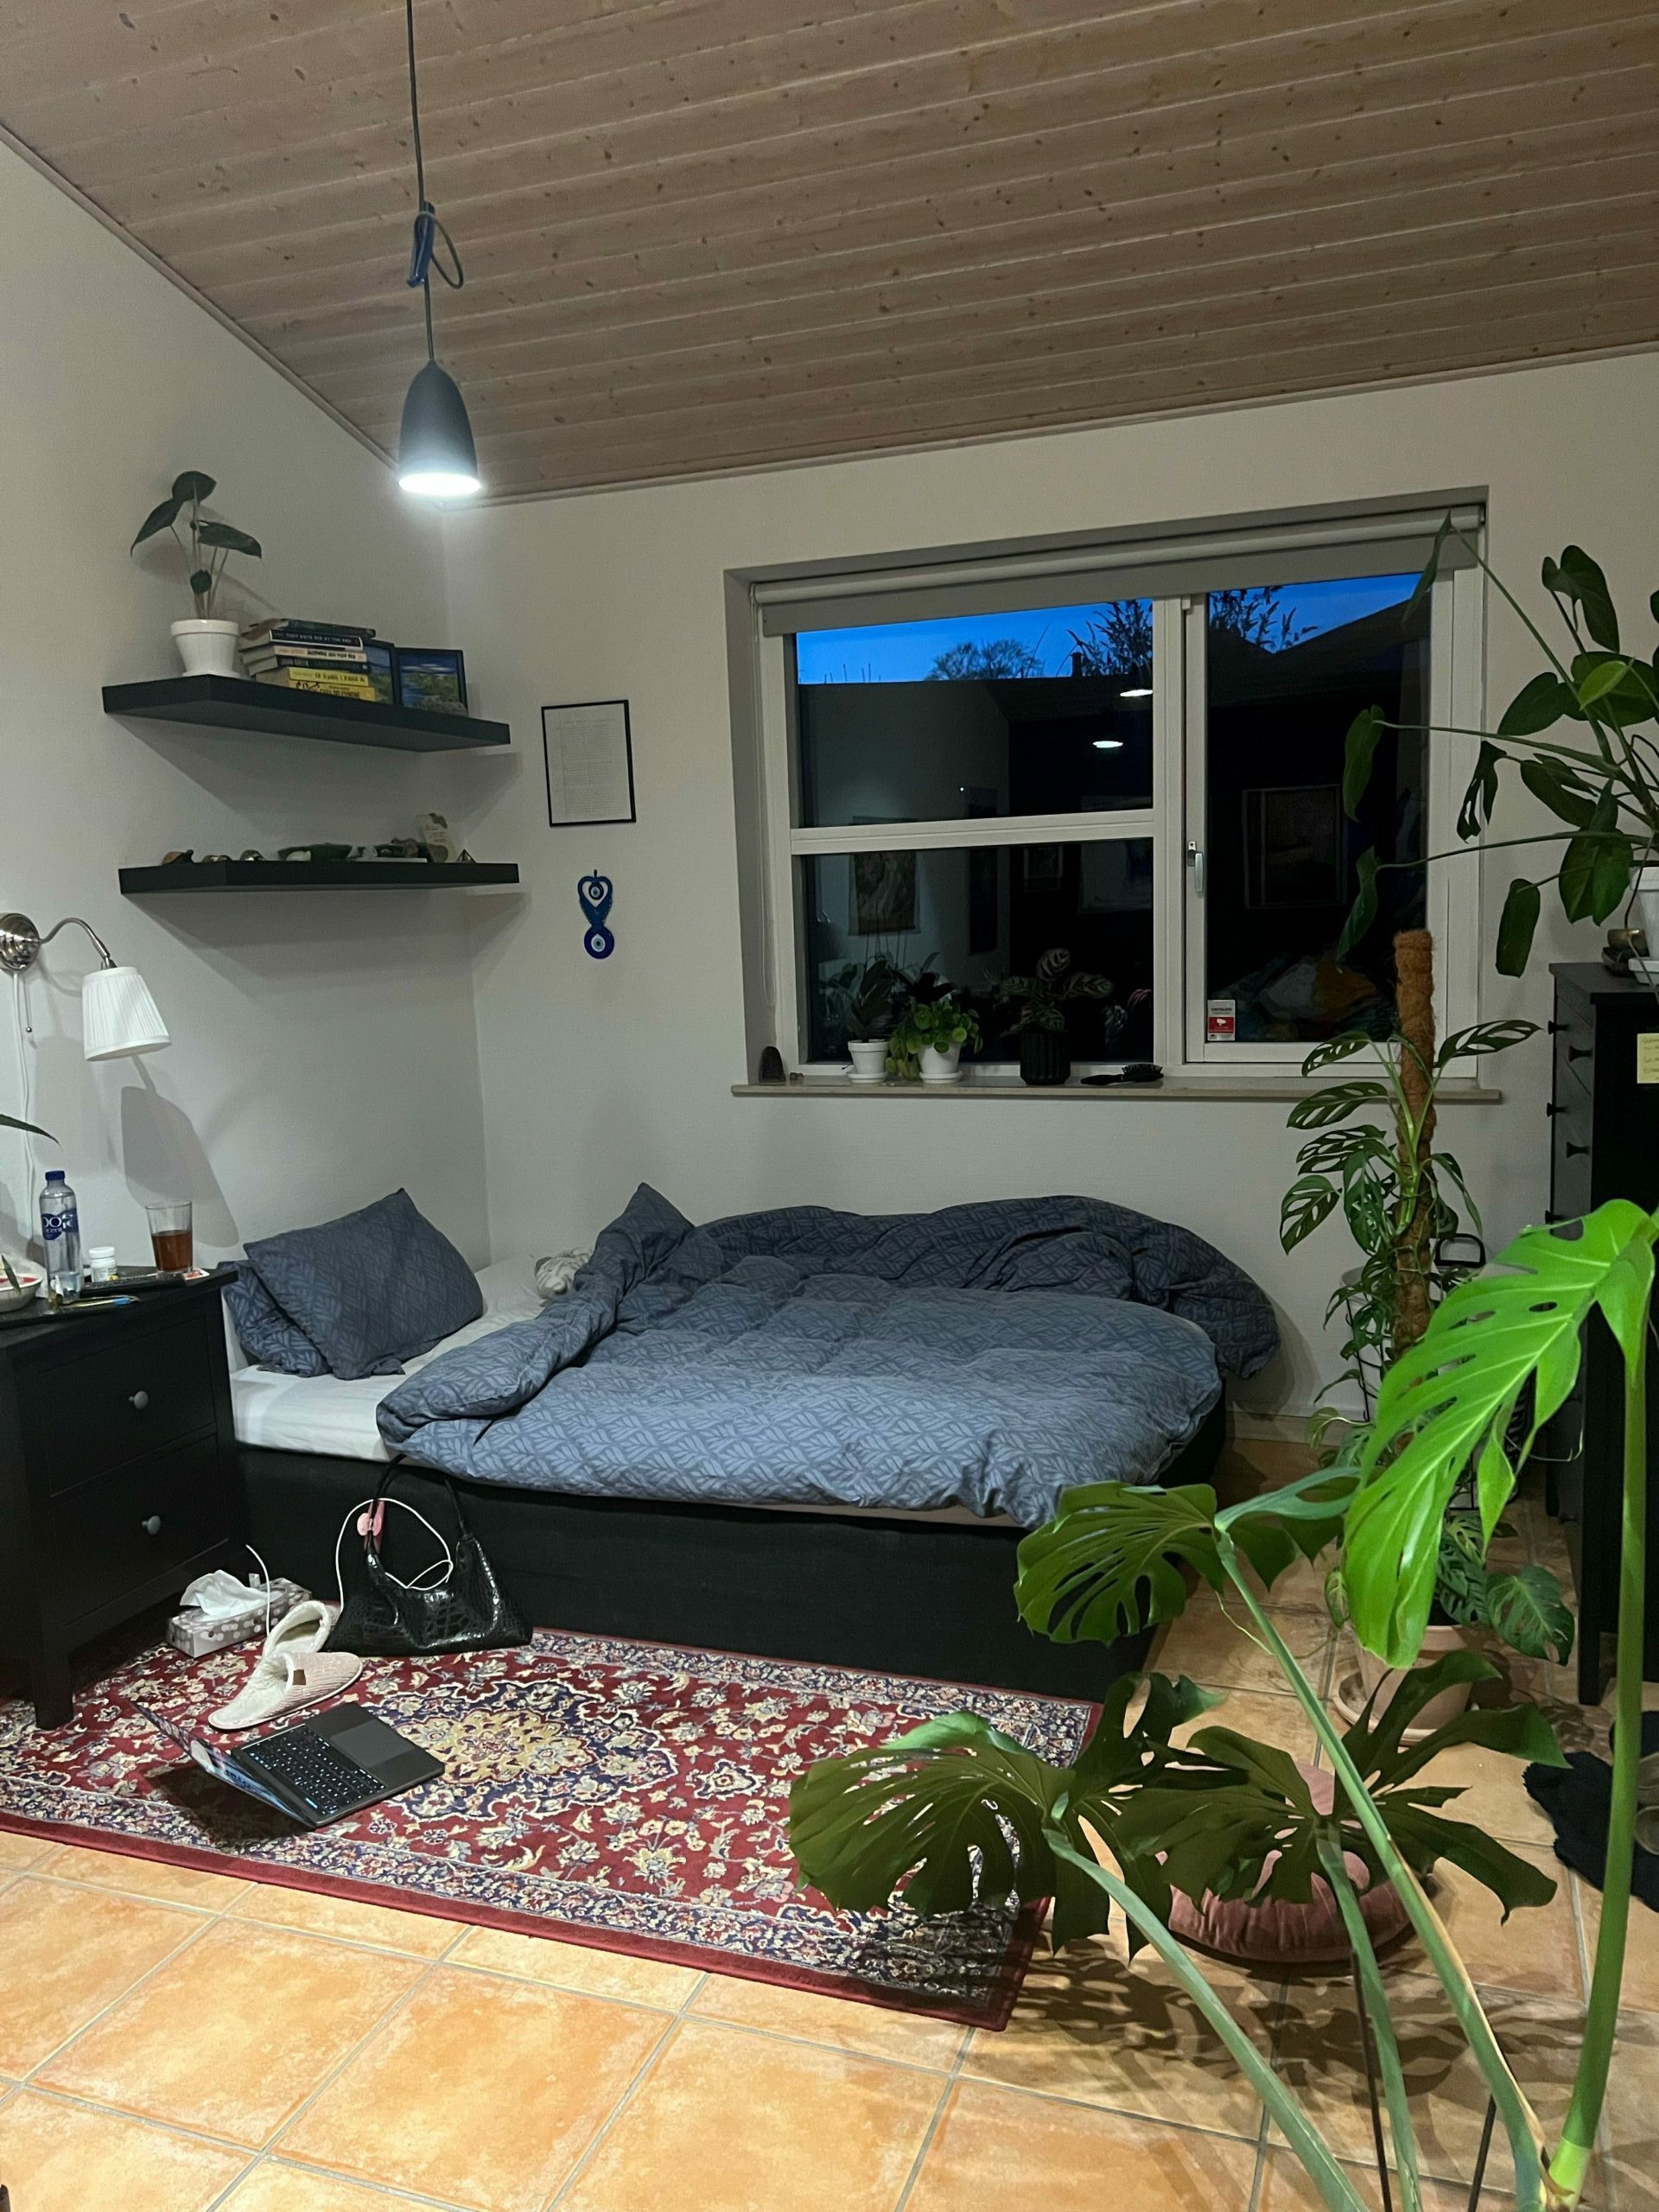 Et teenageværelse med en dobbeltseng, to hylder på væggen, nogle planter i forgrunden og et tæppe på gulvet.